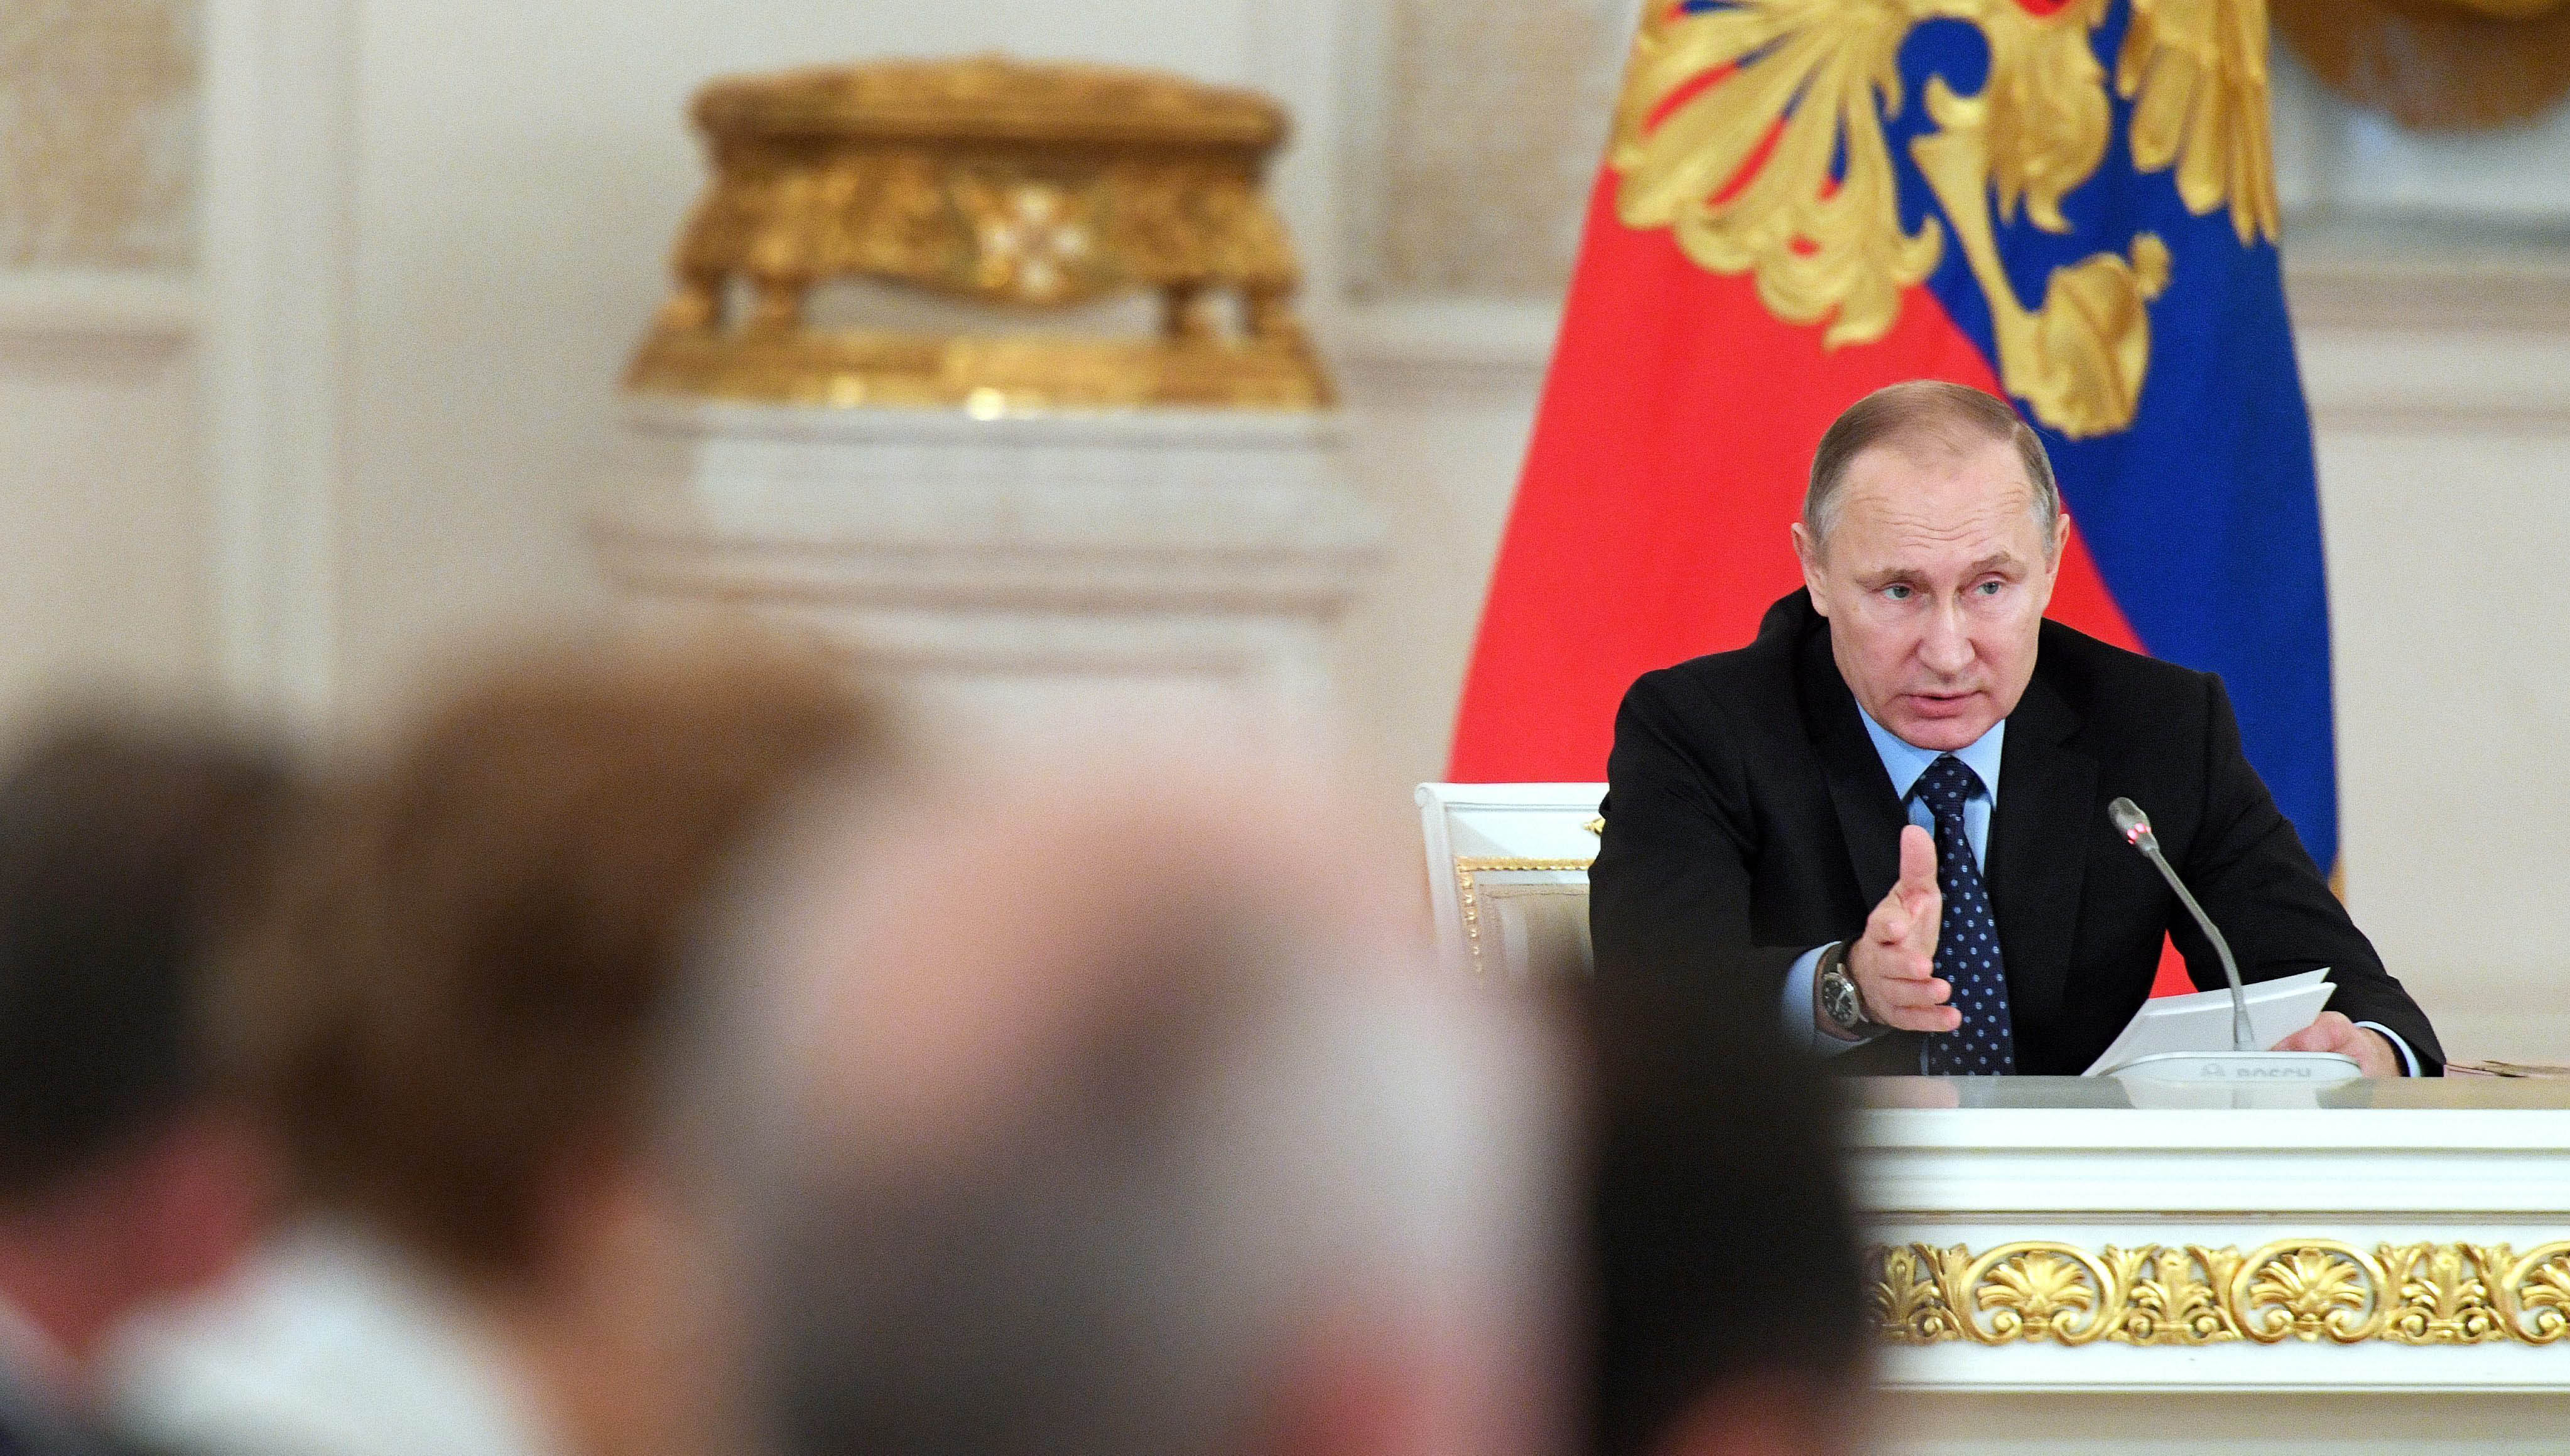 El presidente Putin decidirá cómo responder a las nuevas sanciones de EE.UU.